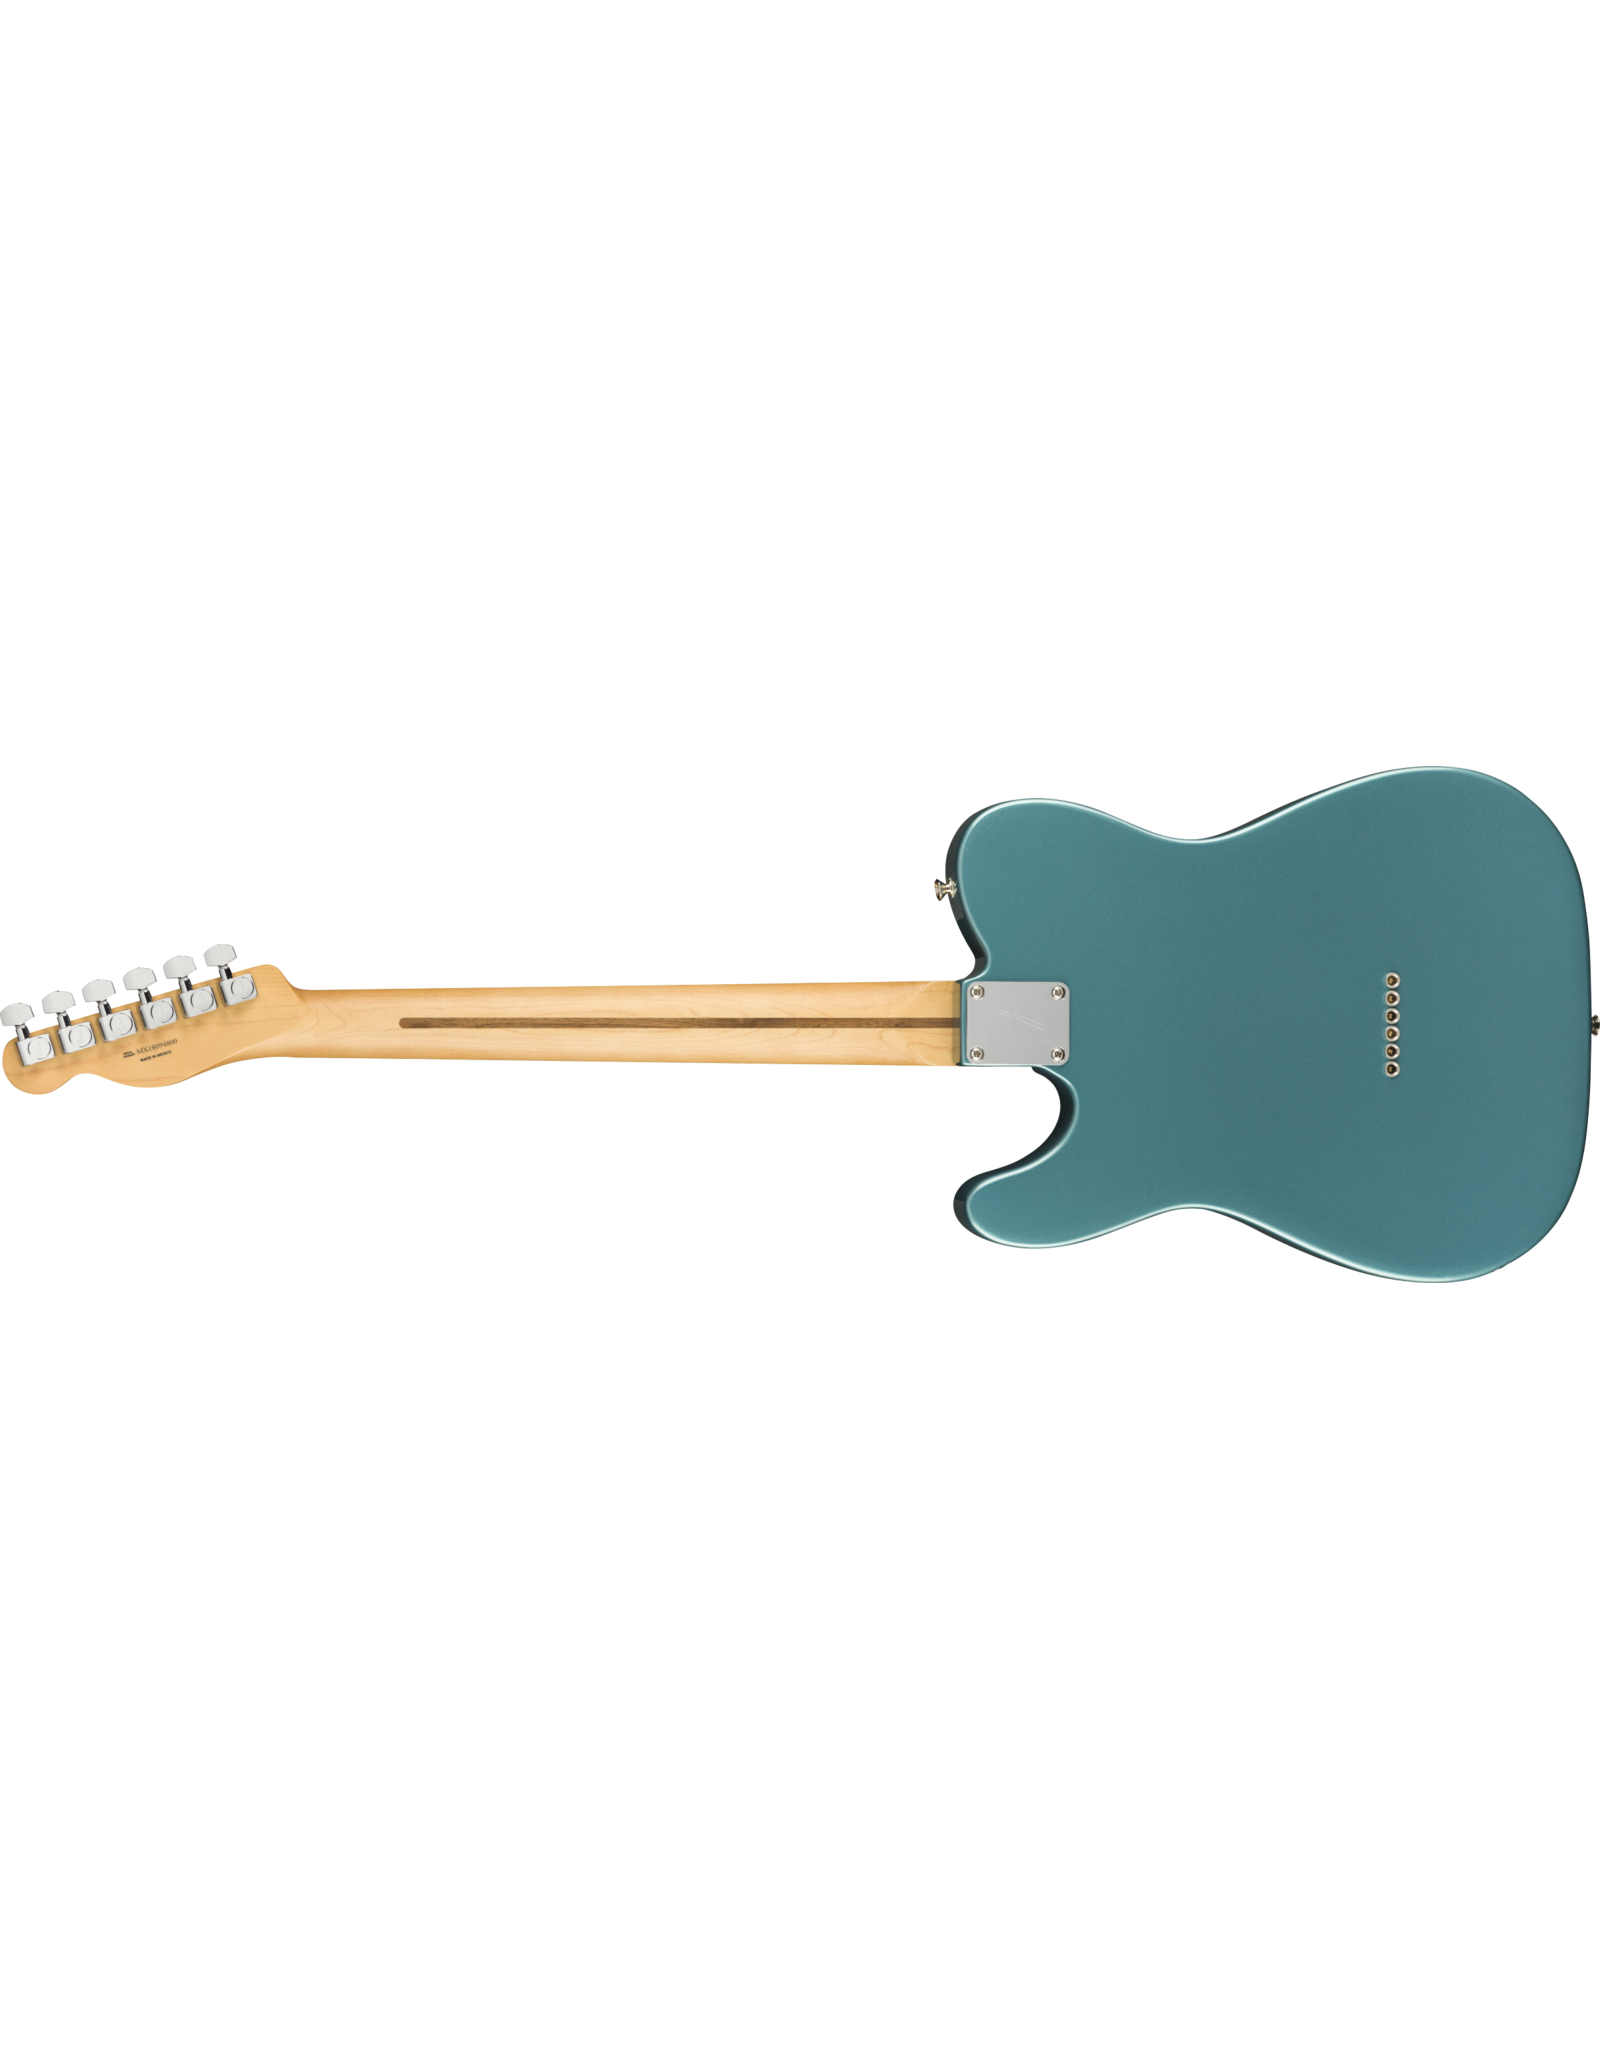 Fender Fender Player Telecaster Tidepool Maple